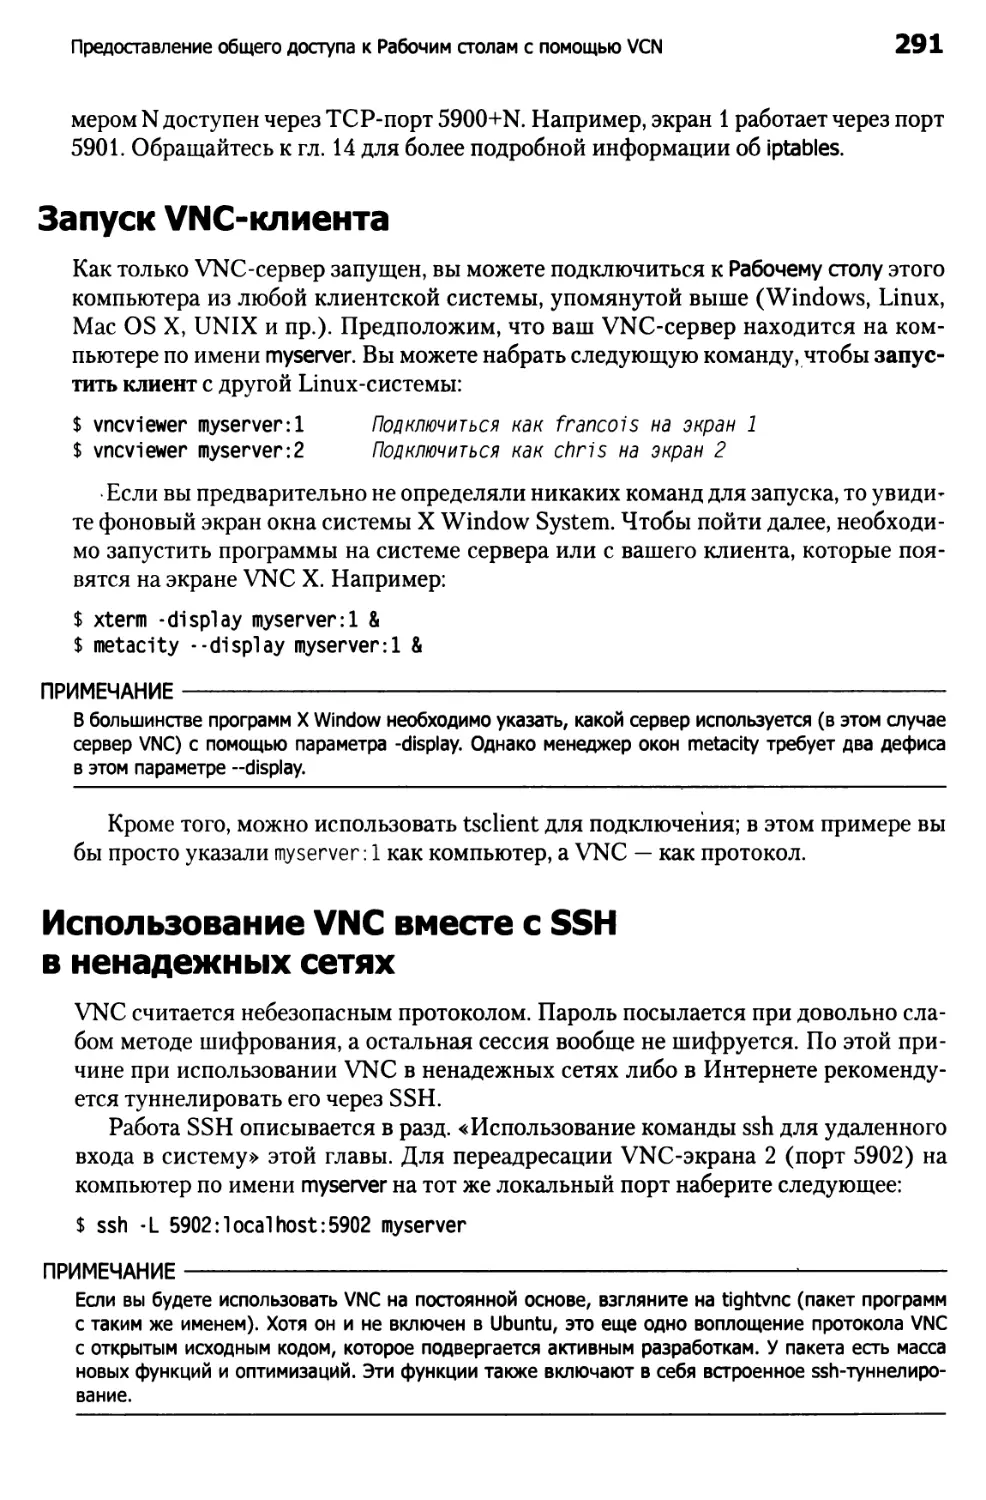 Запуск VNC–клиента
Использование VNC вместе с SSH в ненадежных сетях